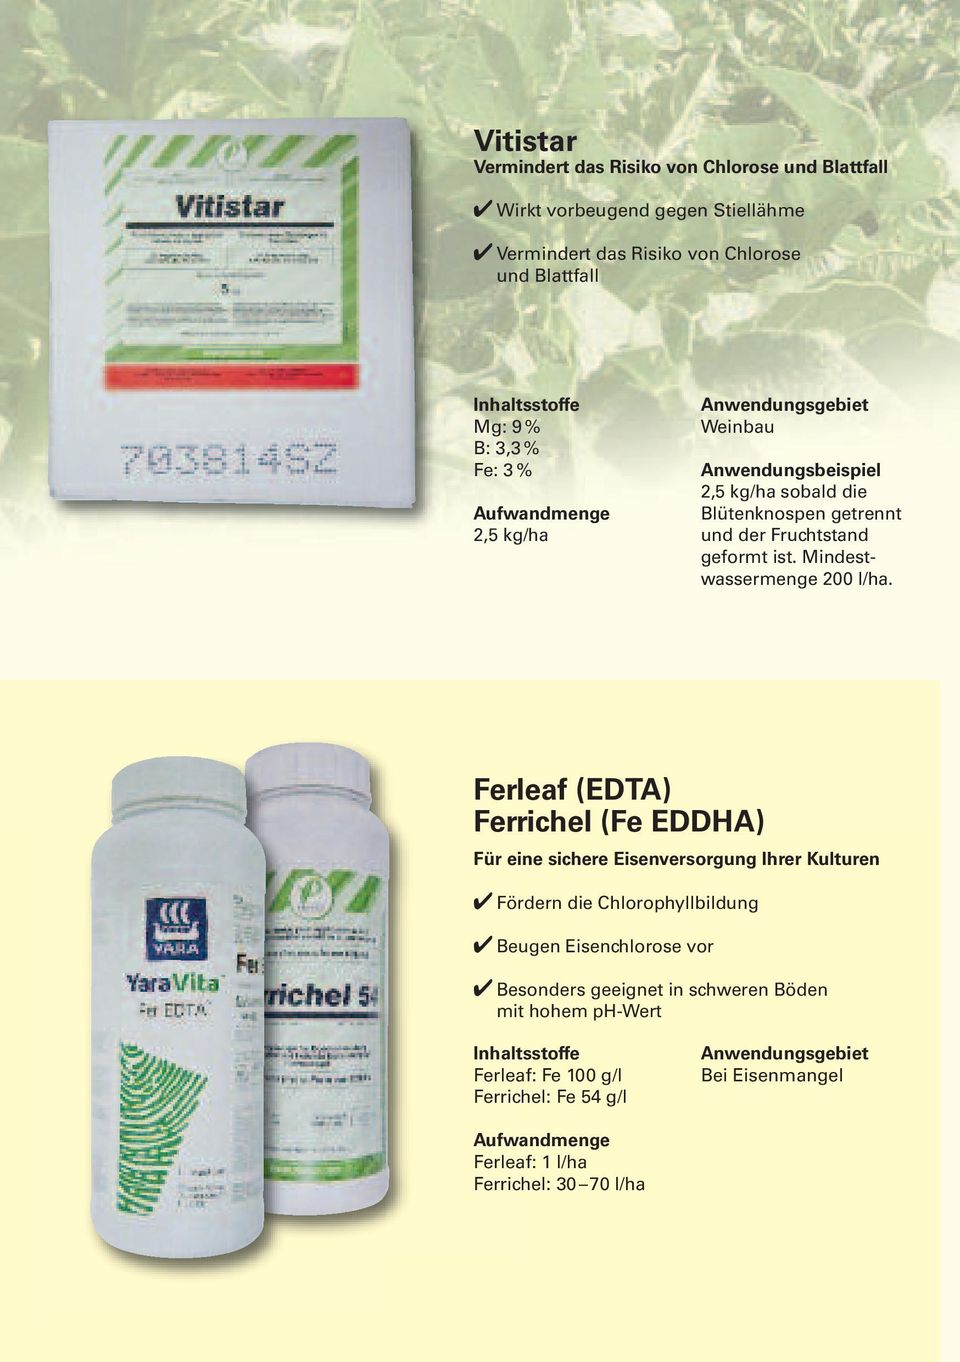 Ferleaf (EDTA) Ferrichel (Fe EDDHA) Für eine sichere Eisenversorgung Ihrer Kulturen Fördern die Chlorophyllbildung Beugen Eisenchlorose vor